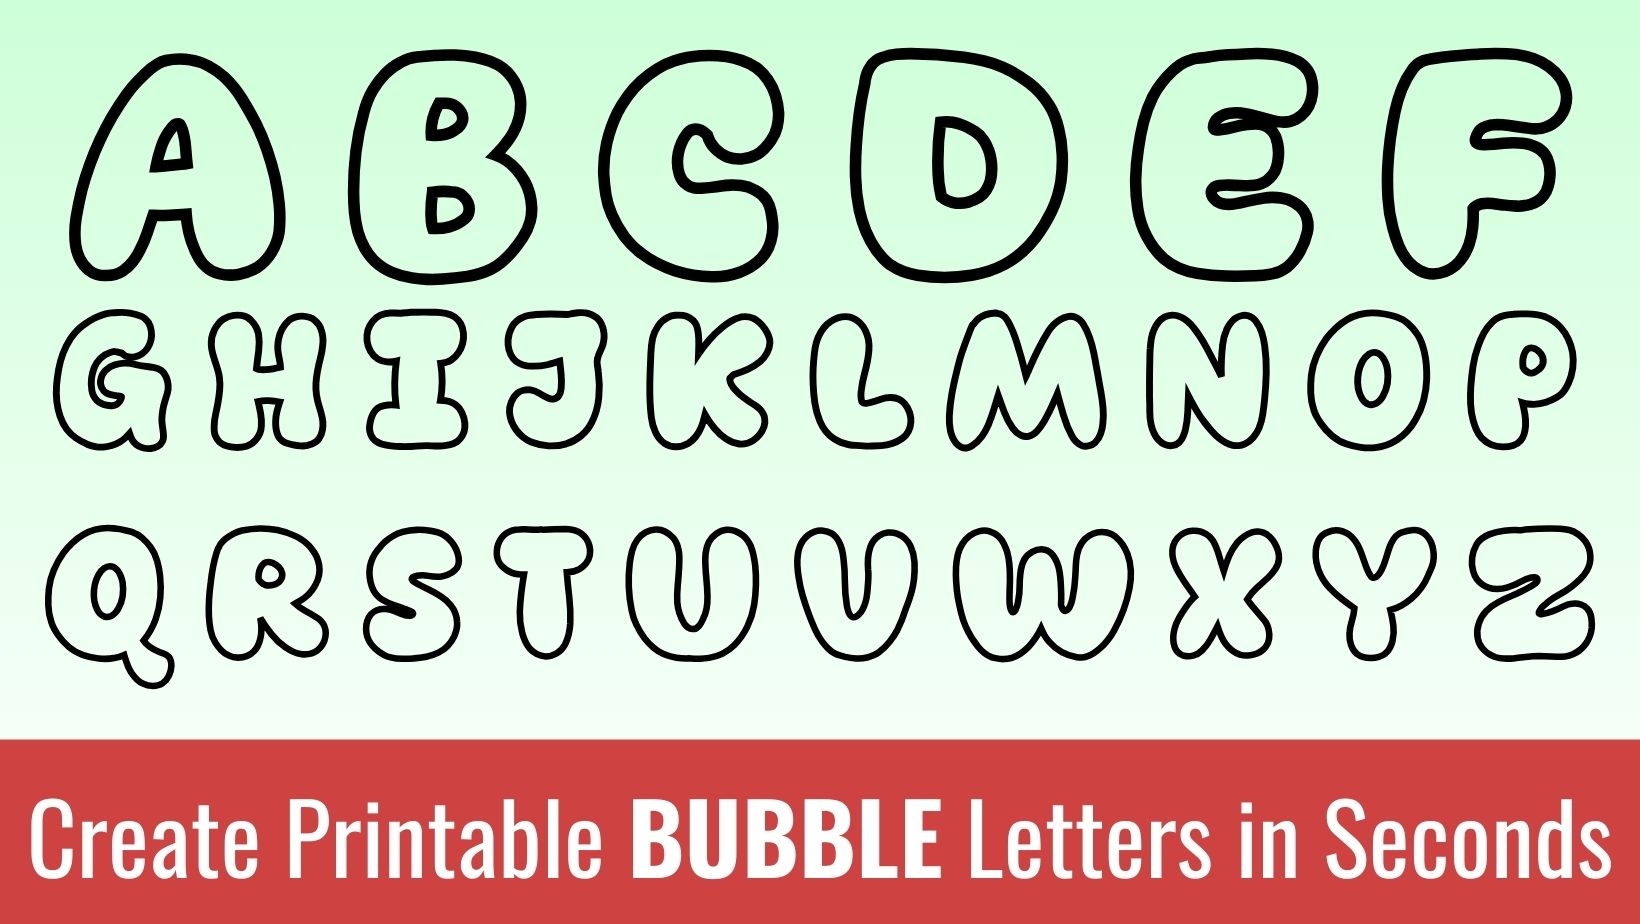 Printable Bubble Letters Free Alphabet Font Letter Templates - Free Printable Bubble Letters Font